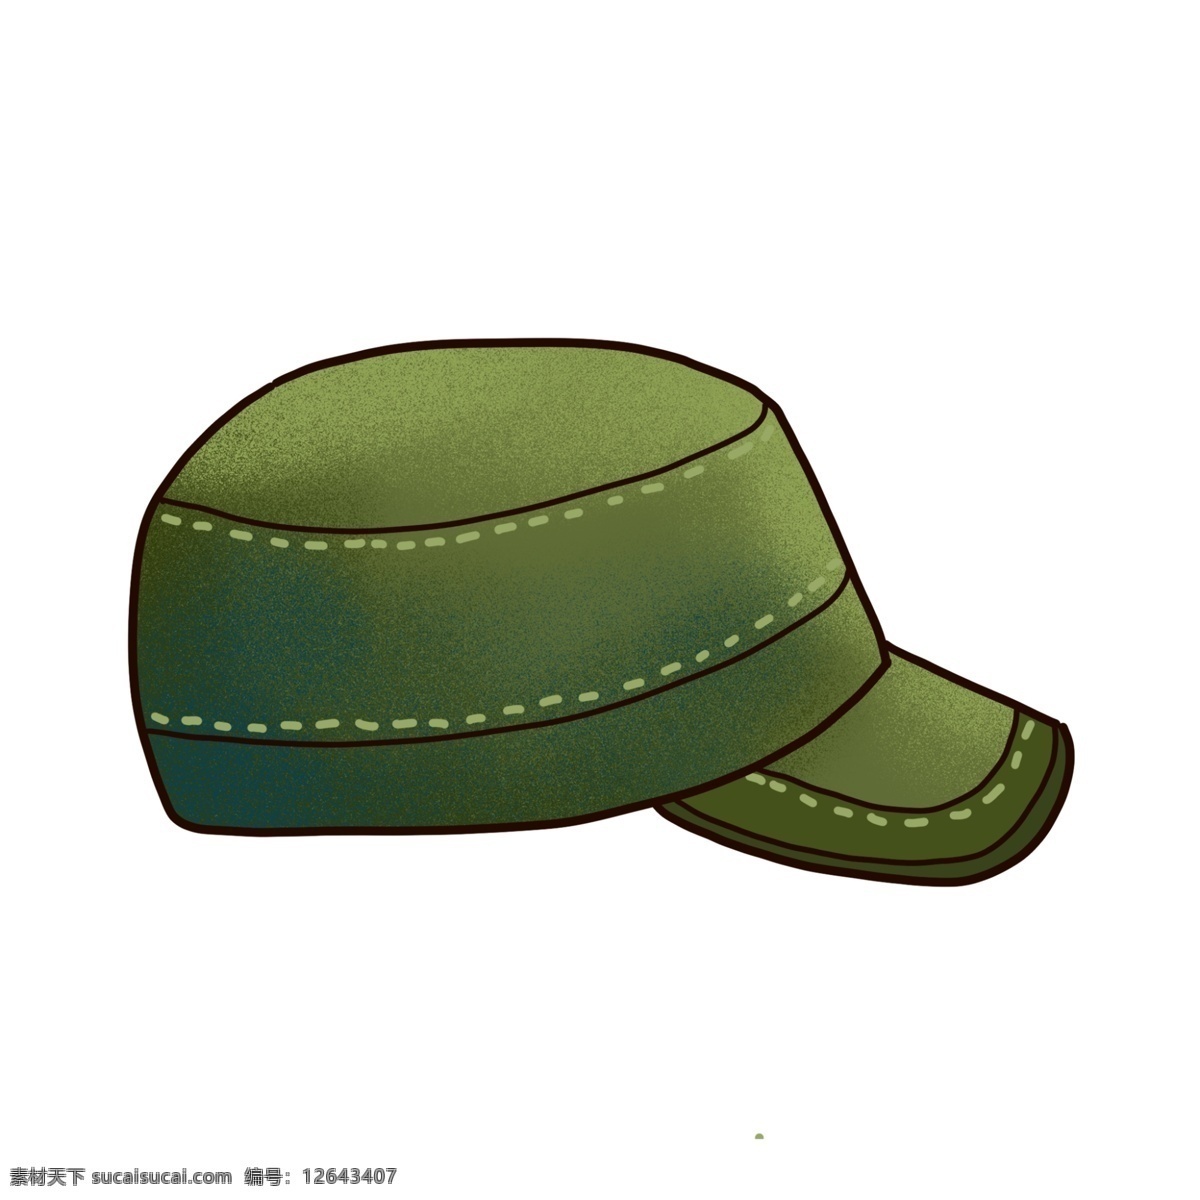 军绿色 鸭舌帽 免 抠 军旅风 帽子 遮阳帽 潮牌帽子 卡通帽子 平顶帽 卡通平顶帽